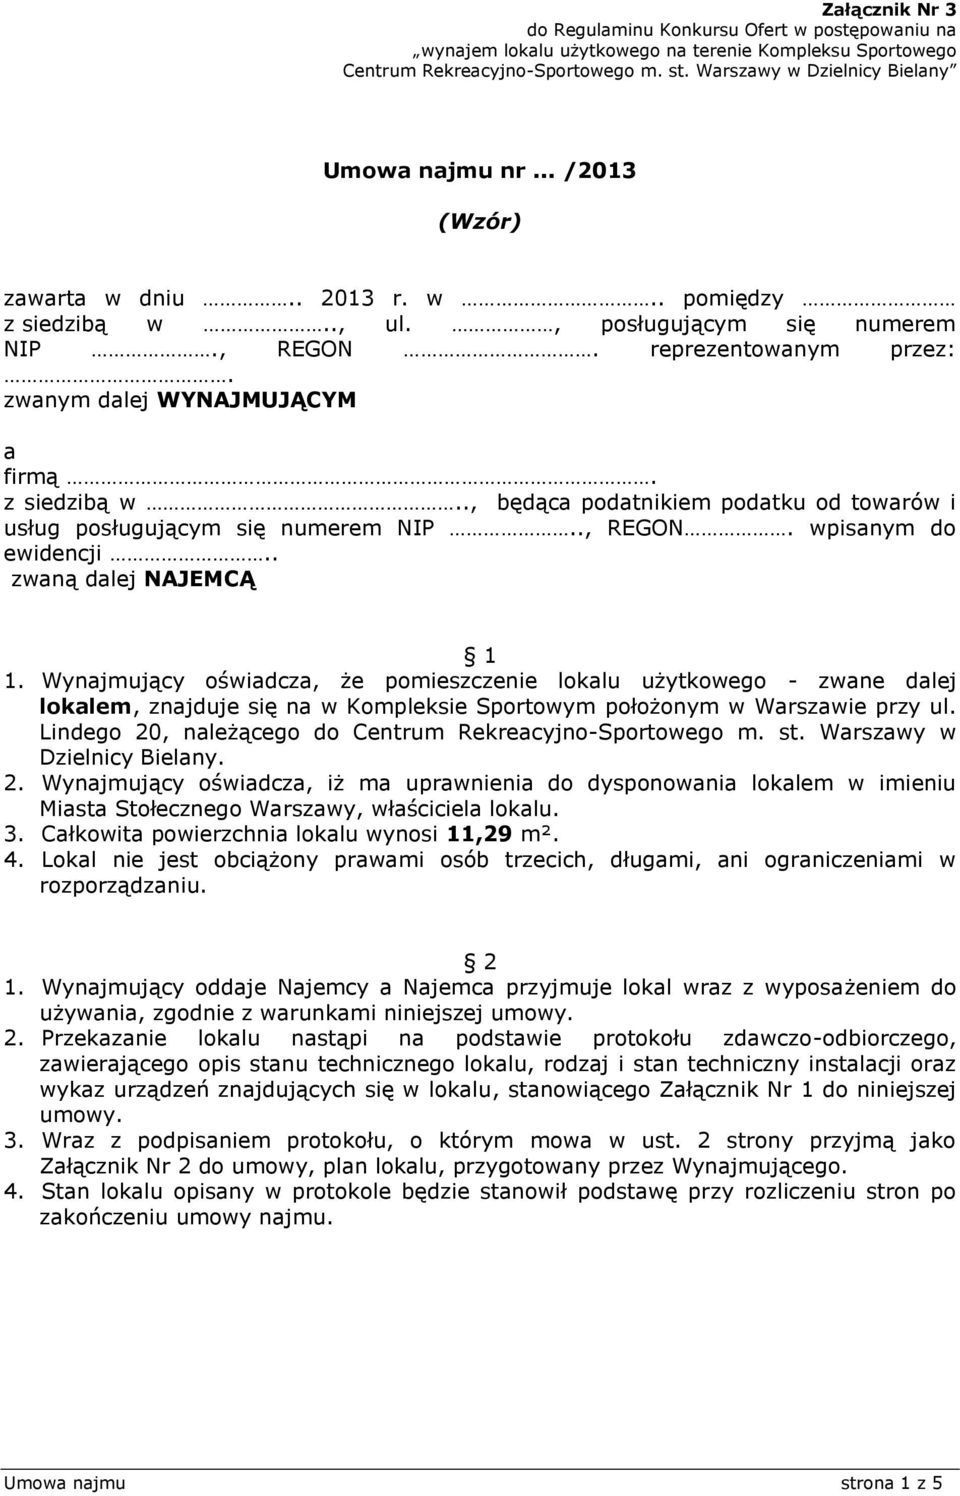 Umowa najmu nr... /2013. (Wzór) - PDF Darmowe pobieranie